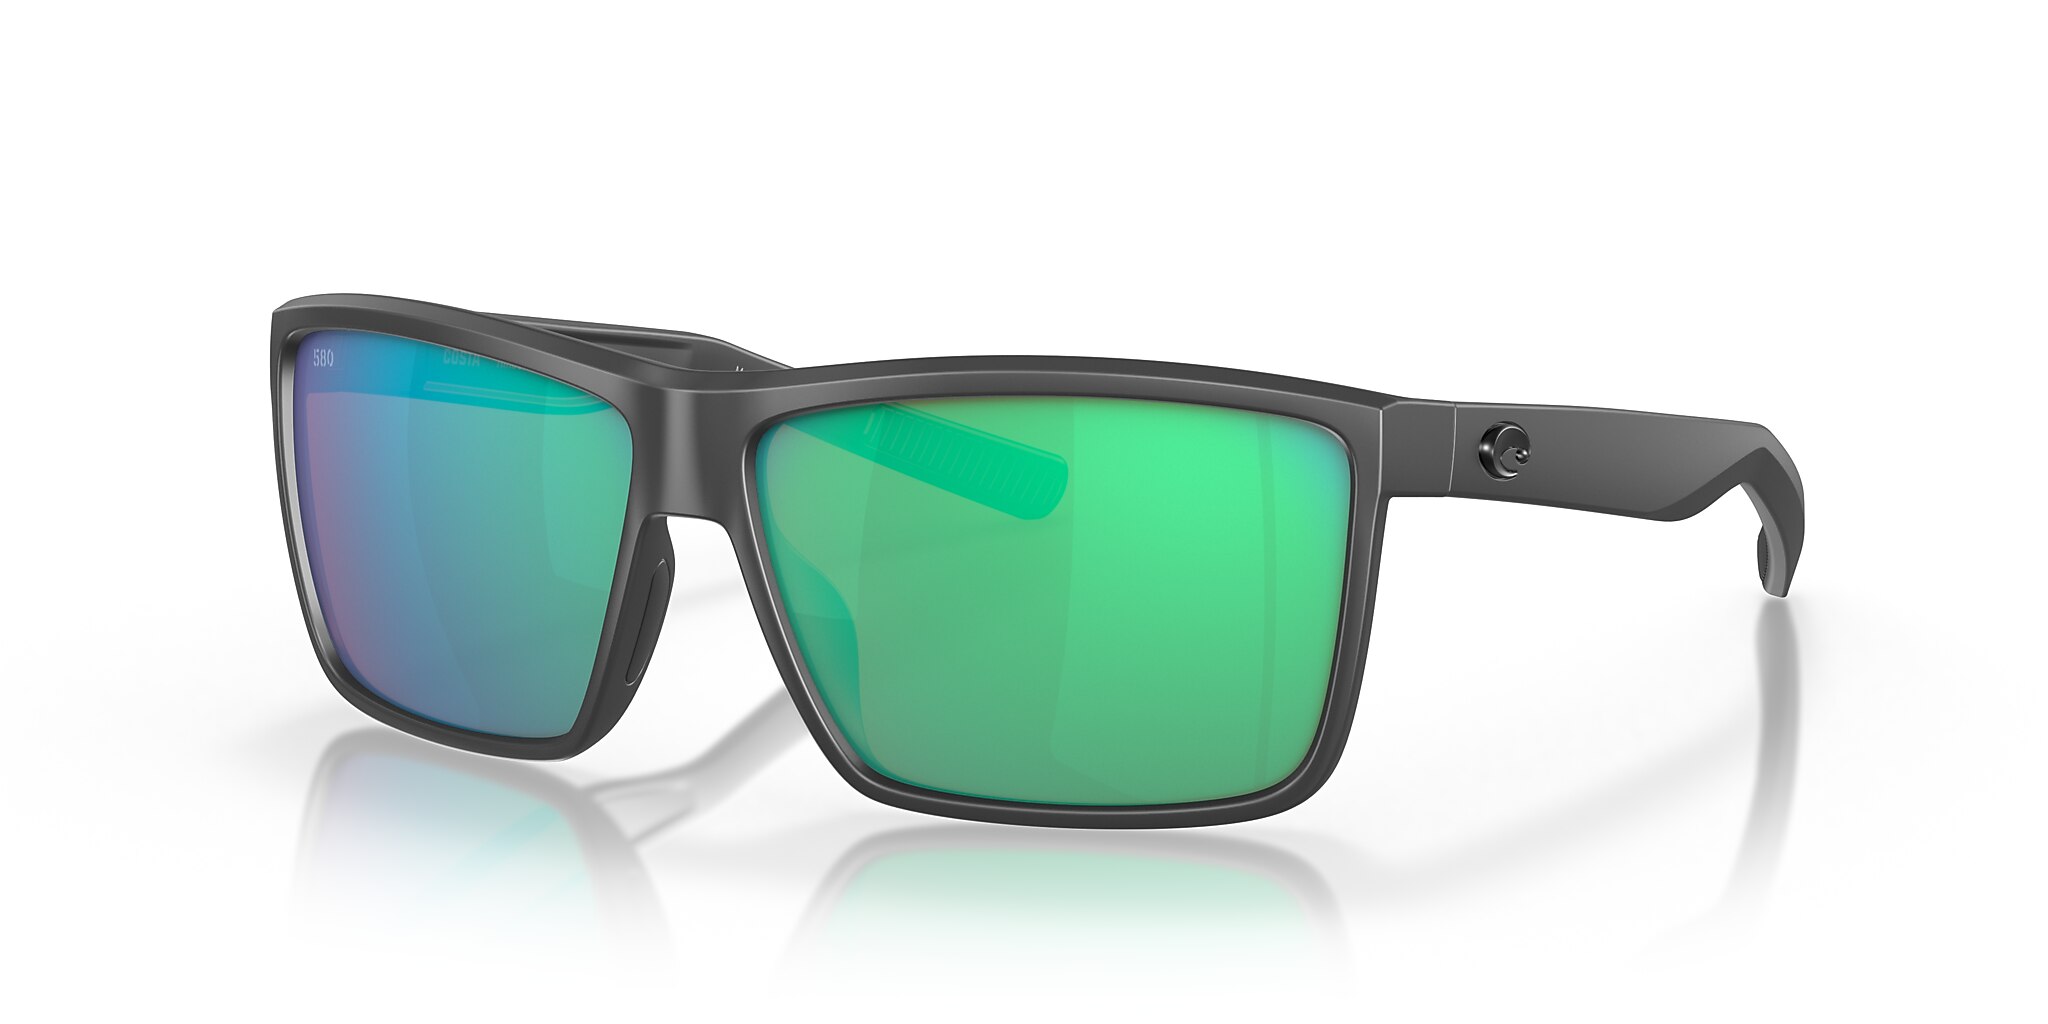 Rinconcito Polarized Sunglasses in Green Mirror | Costa Del Mar®